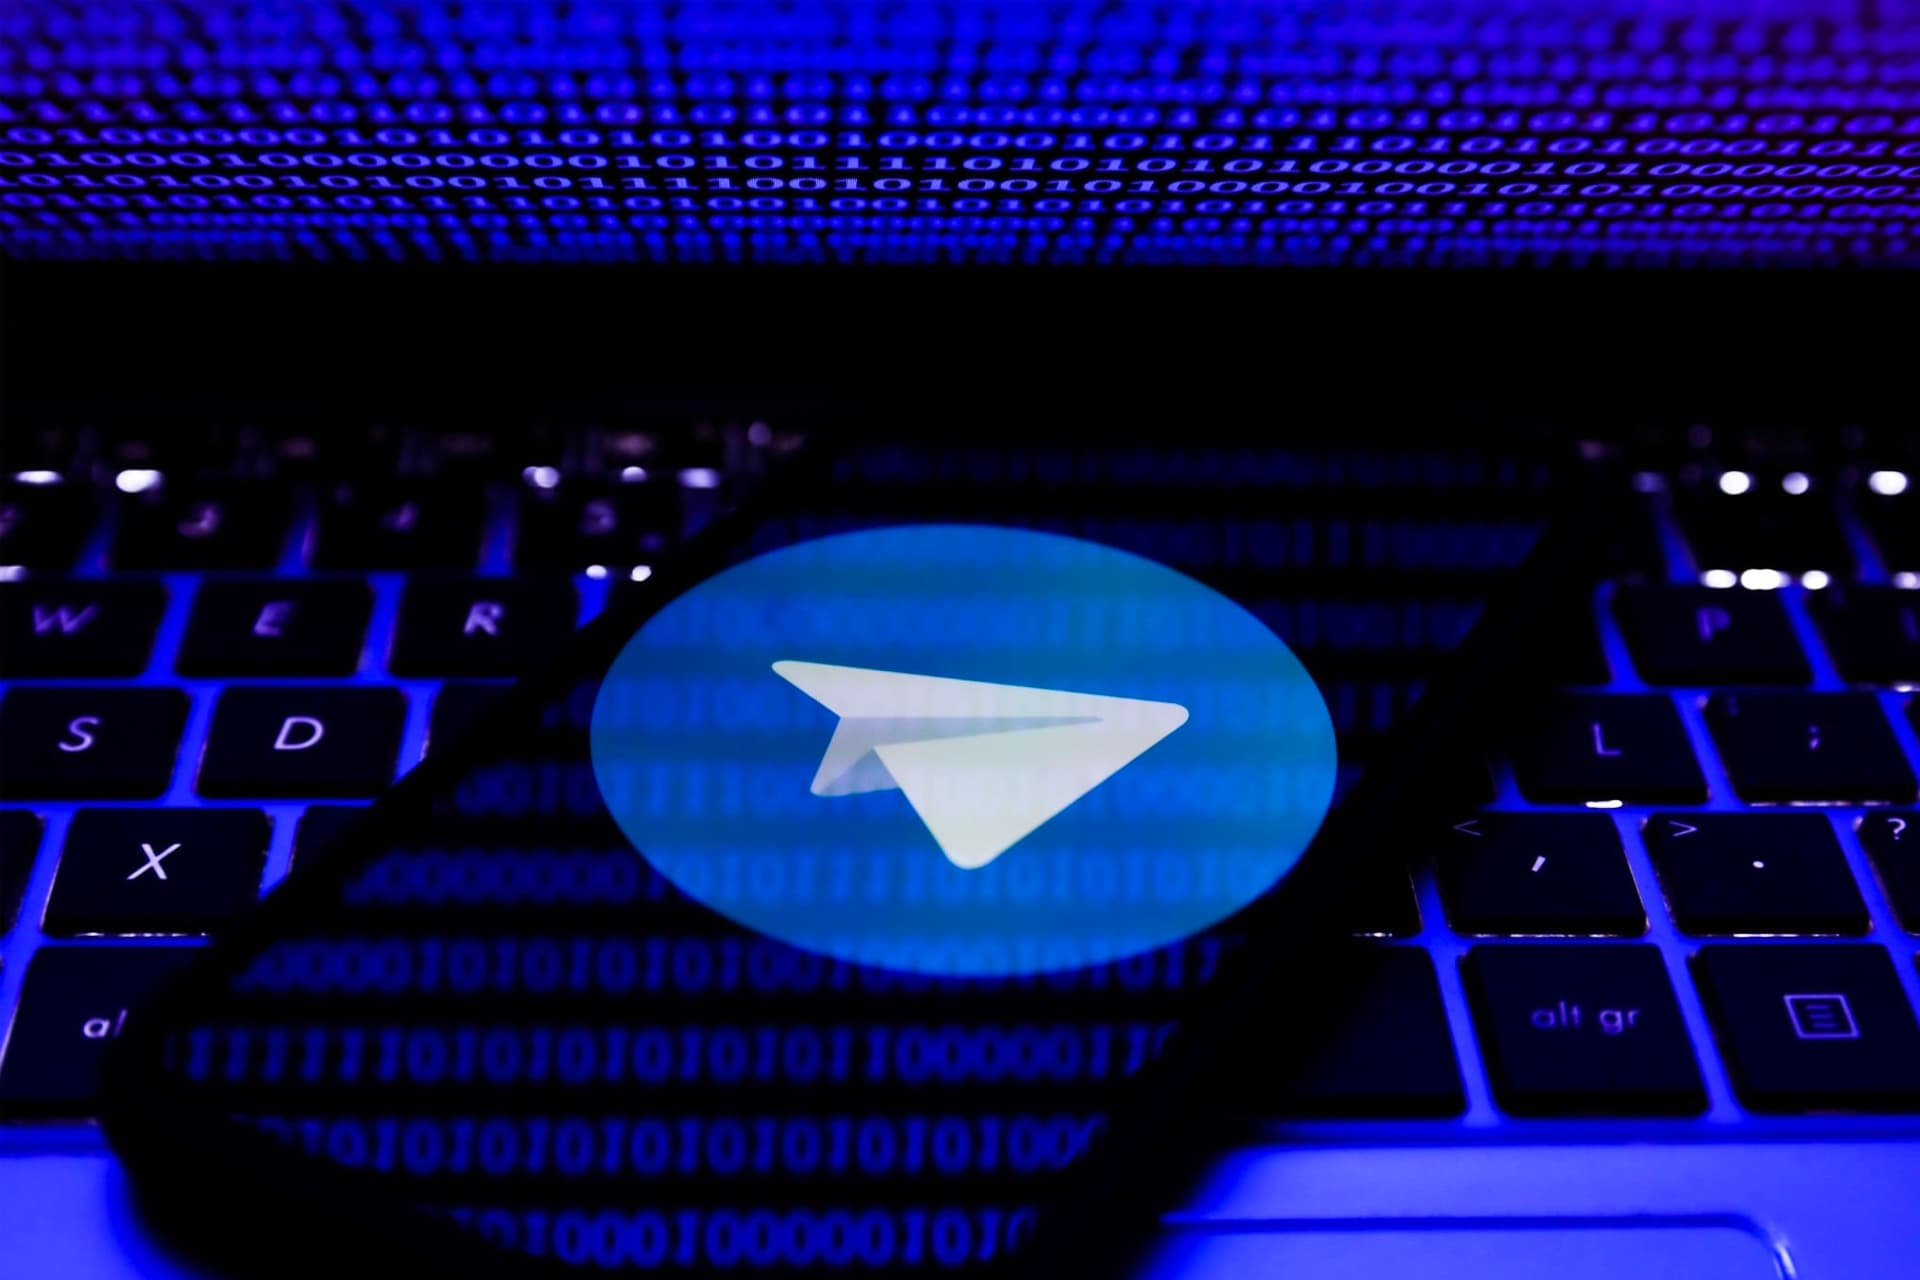 فیلتر تلگرام در اسپانیا لغو شد؛ قاضی: نگران آثار این تصمیم بر مردم هستیم